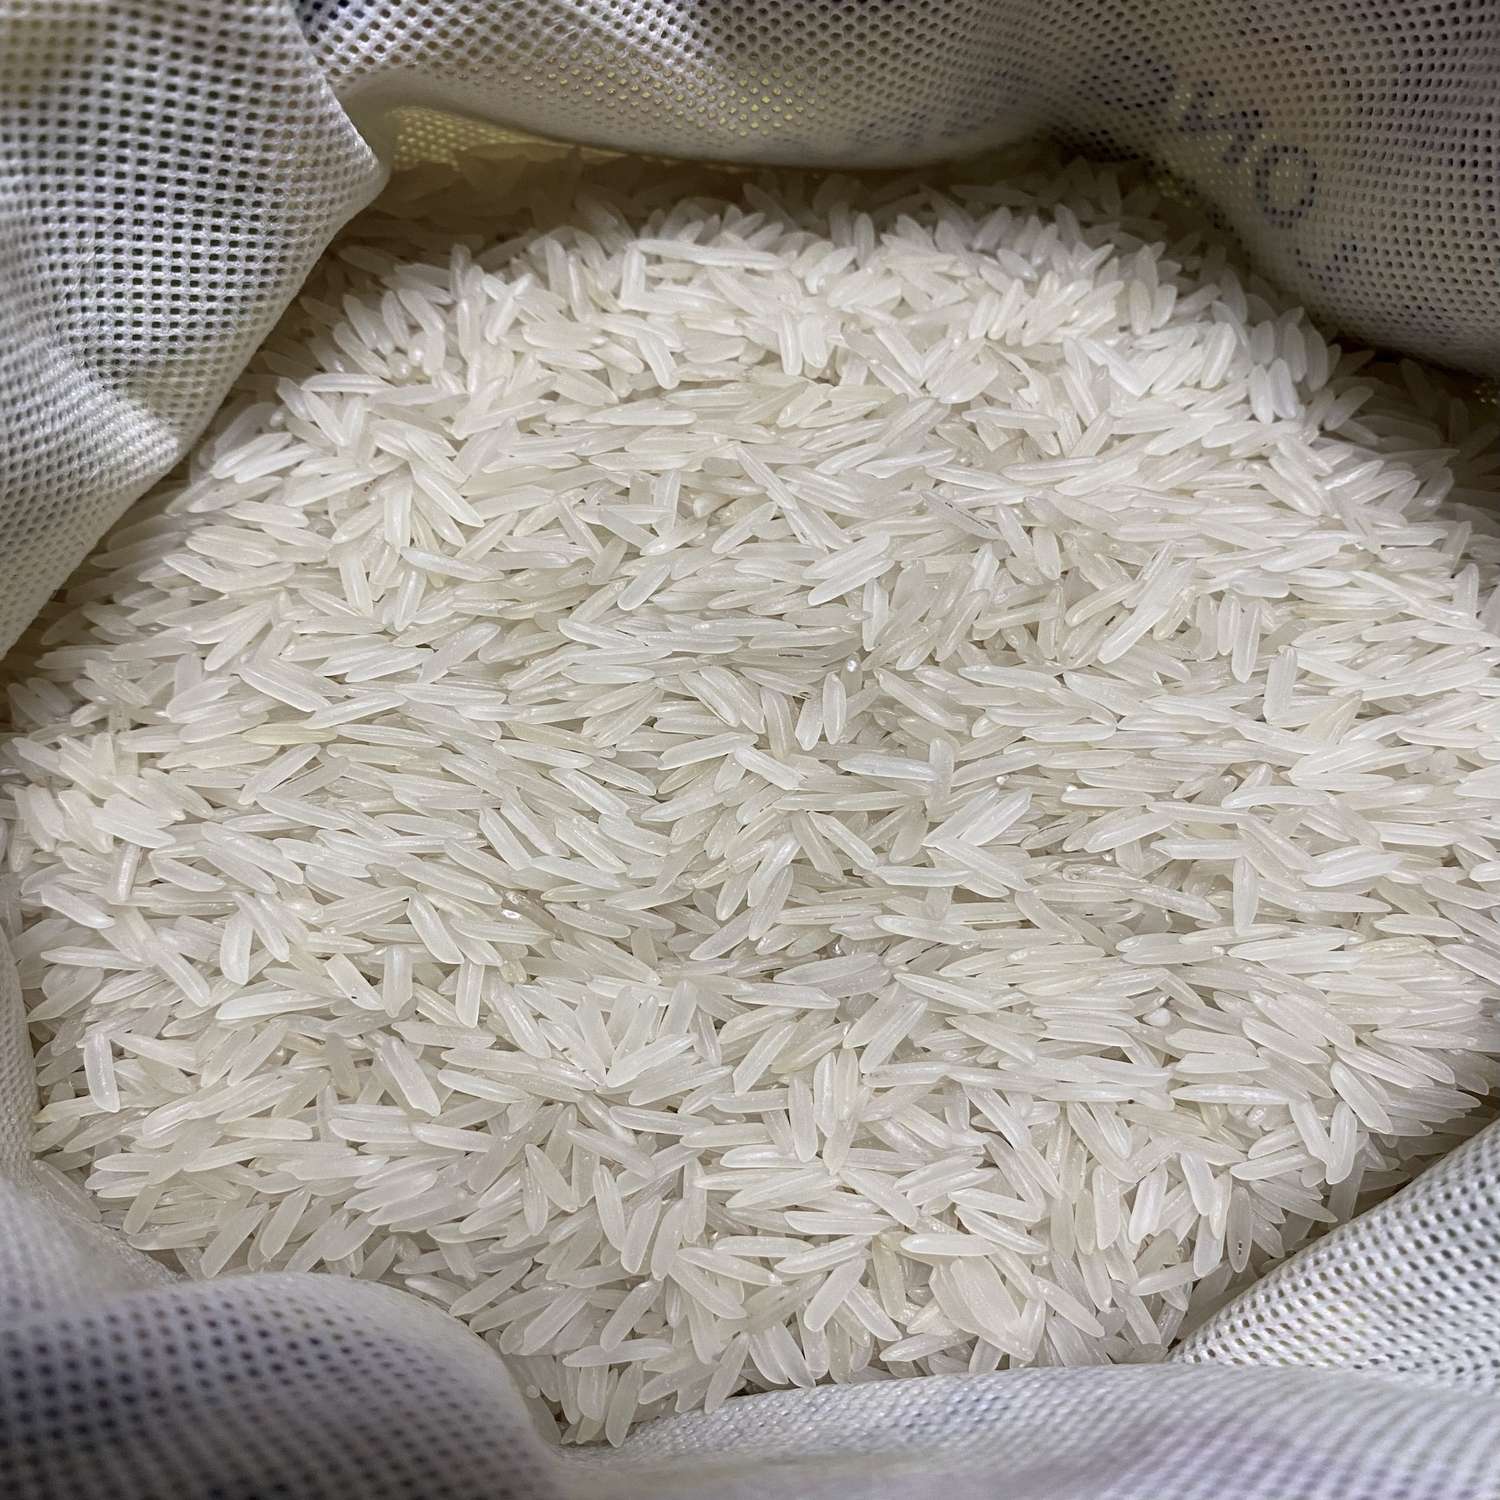 Рис басмати индийский DAS пропаренный мешок на молнии 2 кг - фото 4